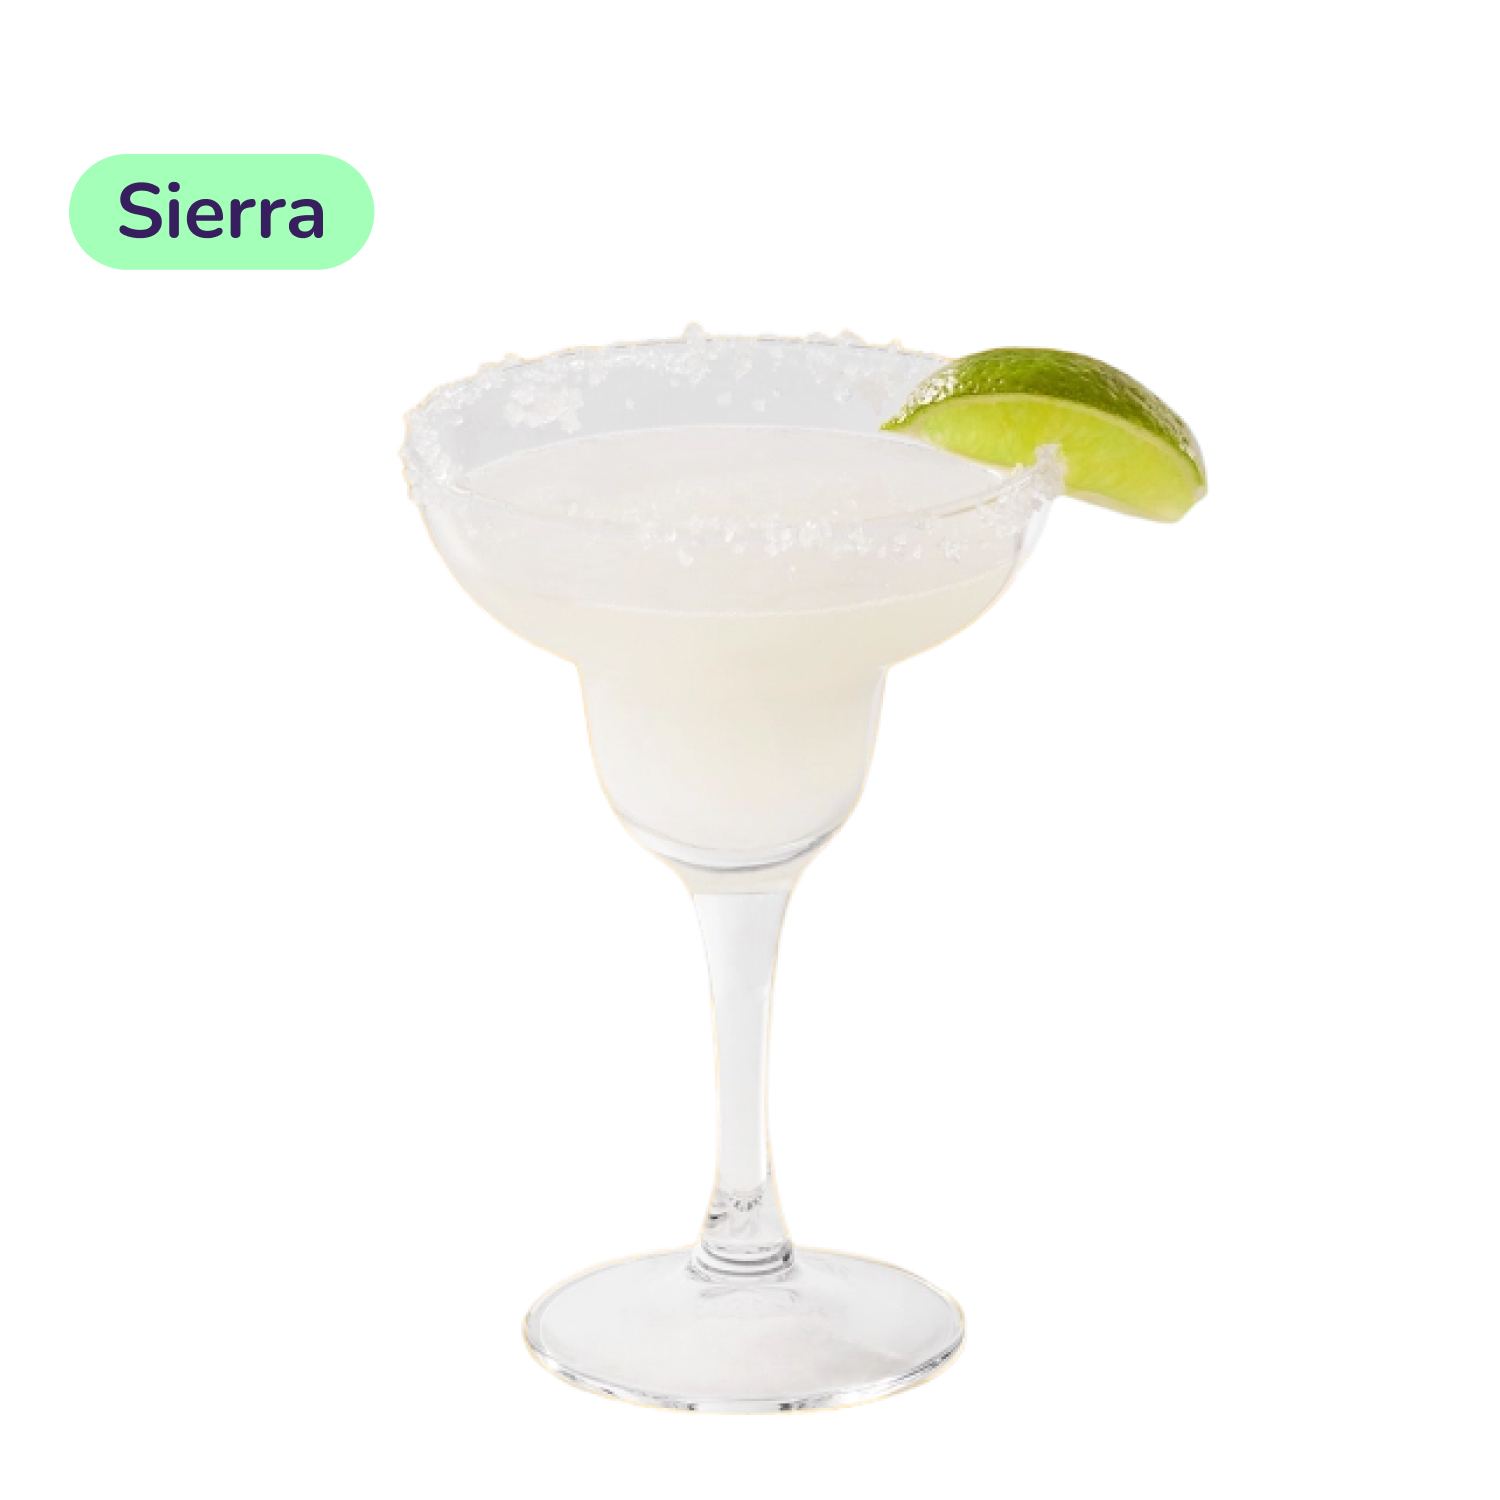 Коктейль Margarita (набор ингредиентов) х17 на основе Sierra Blanco - фото 3